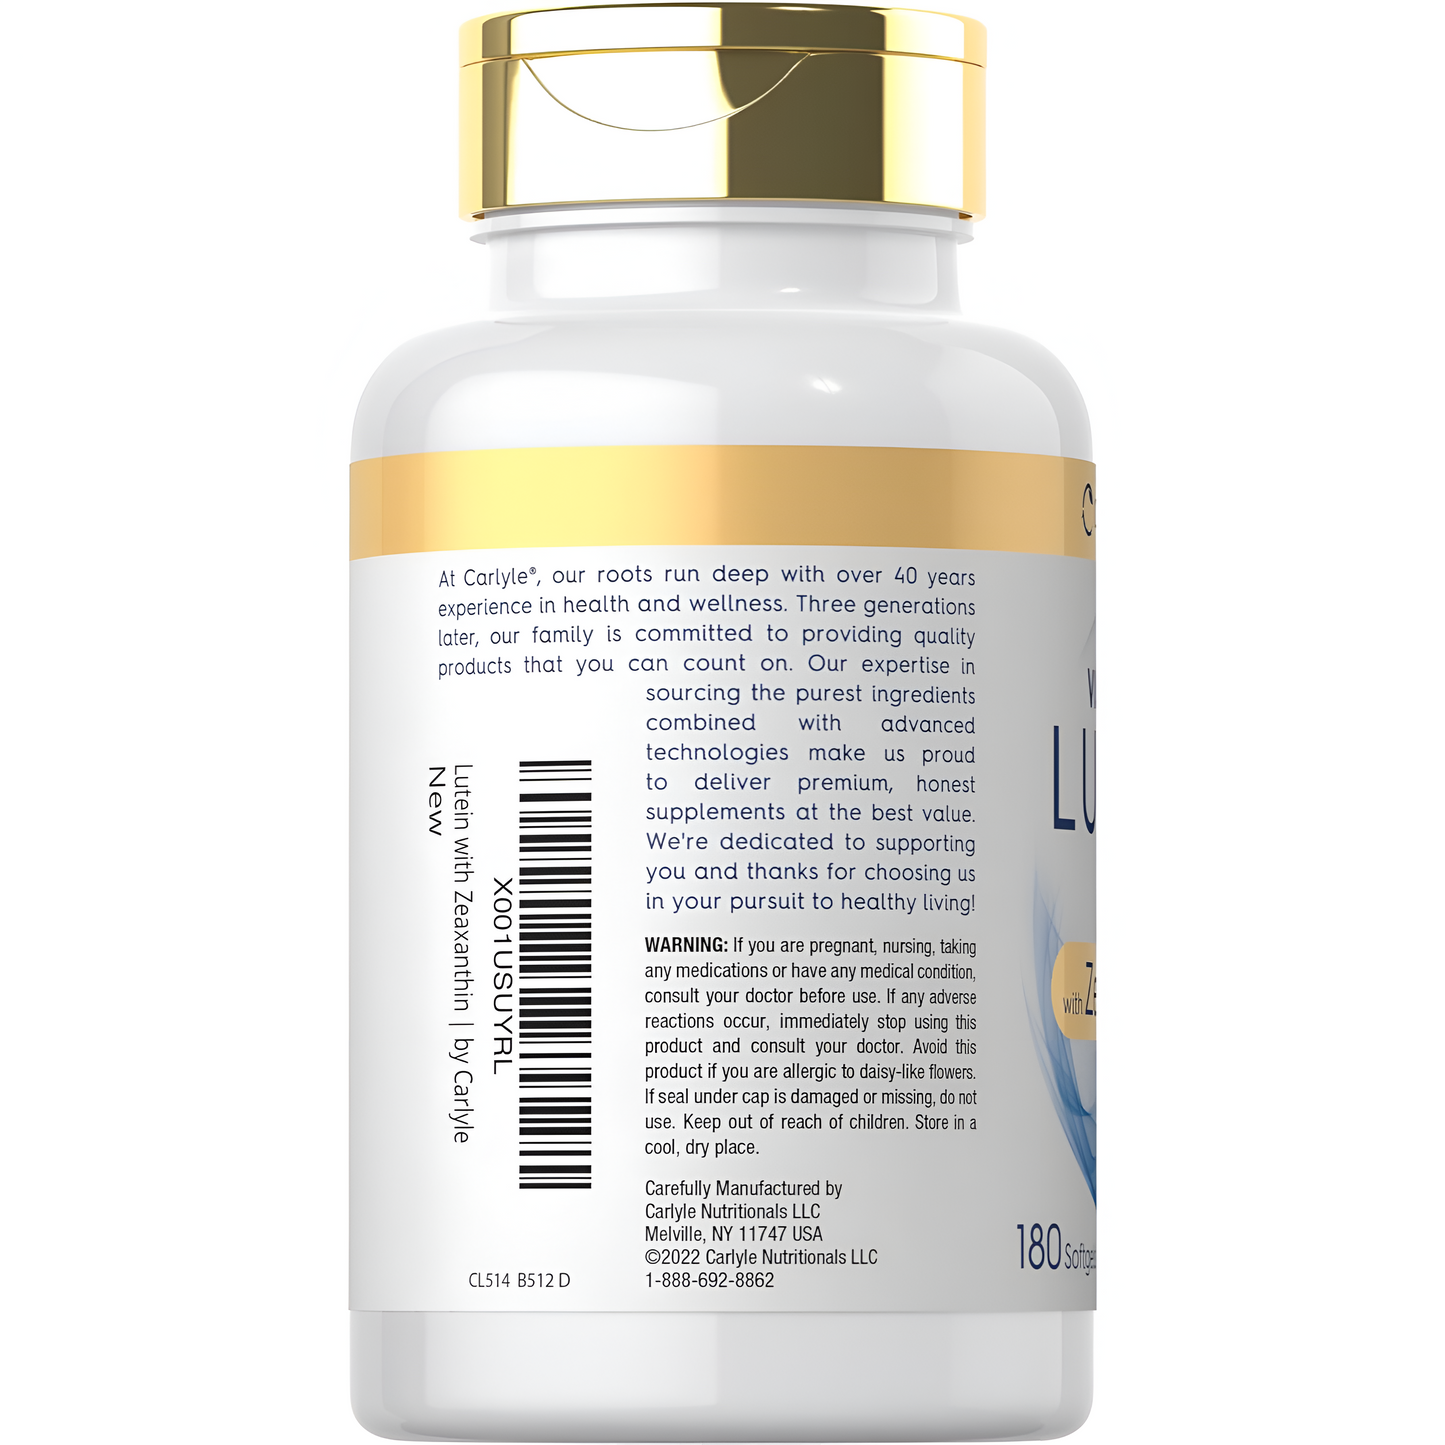 Carlyle Luteína y zeaxantina 40 mg | 180 cápsulas blandas | Vitaminas para la salud ocular | Suplemento sin OMG y sin gluten